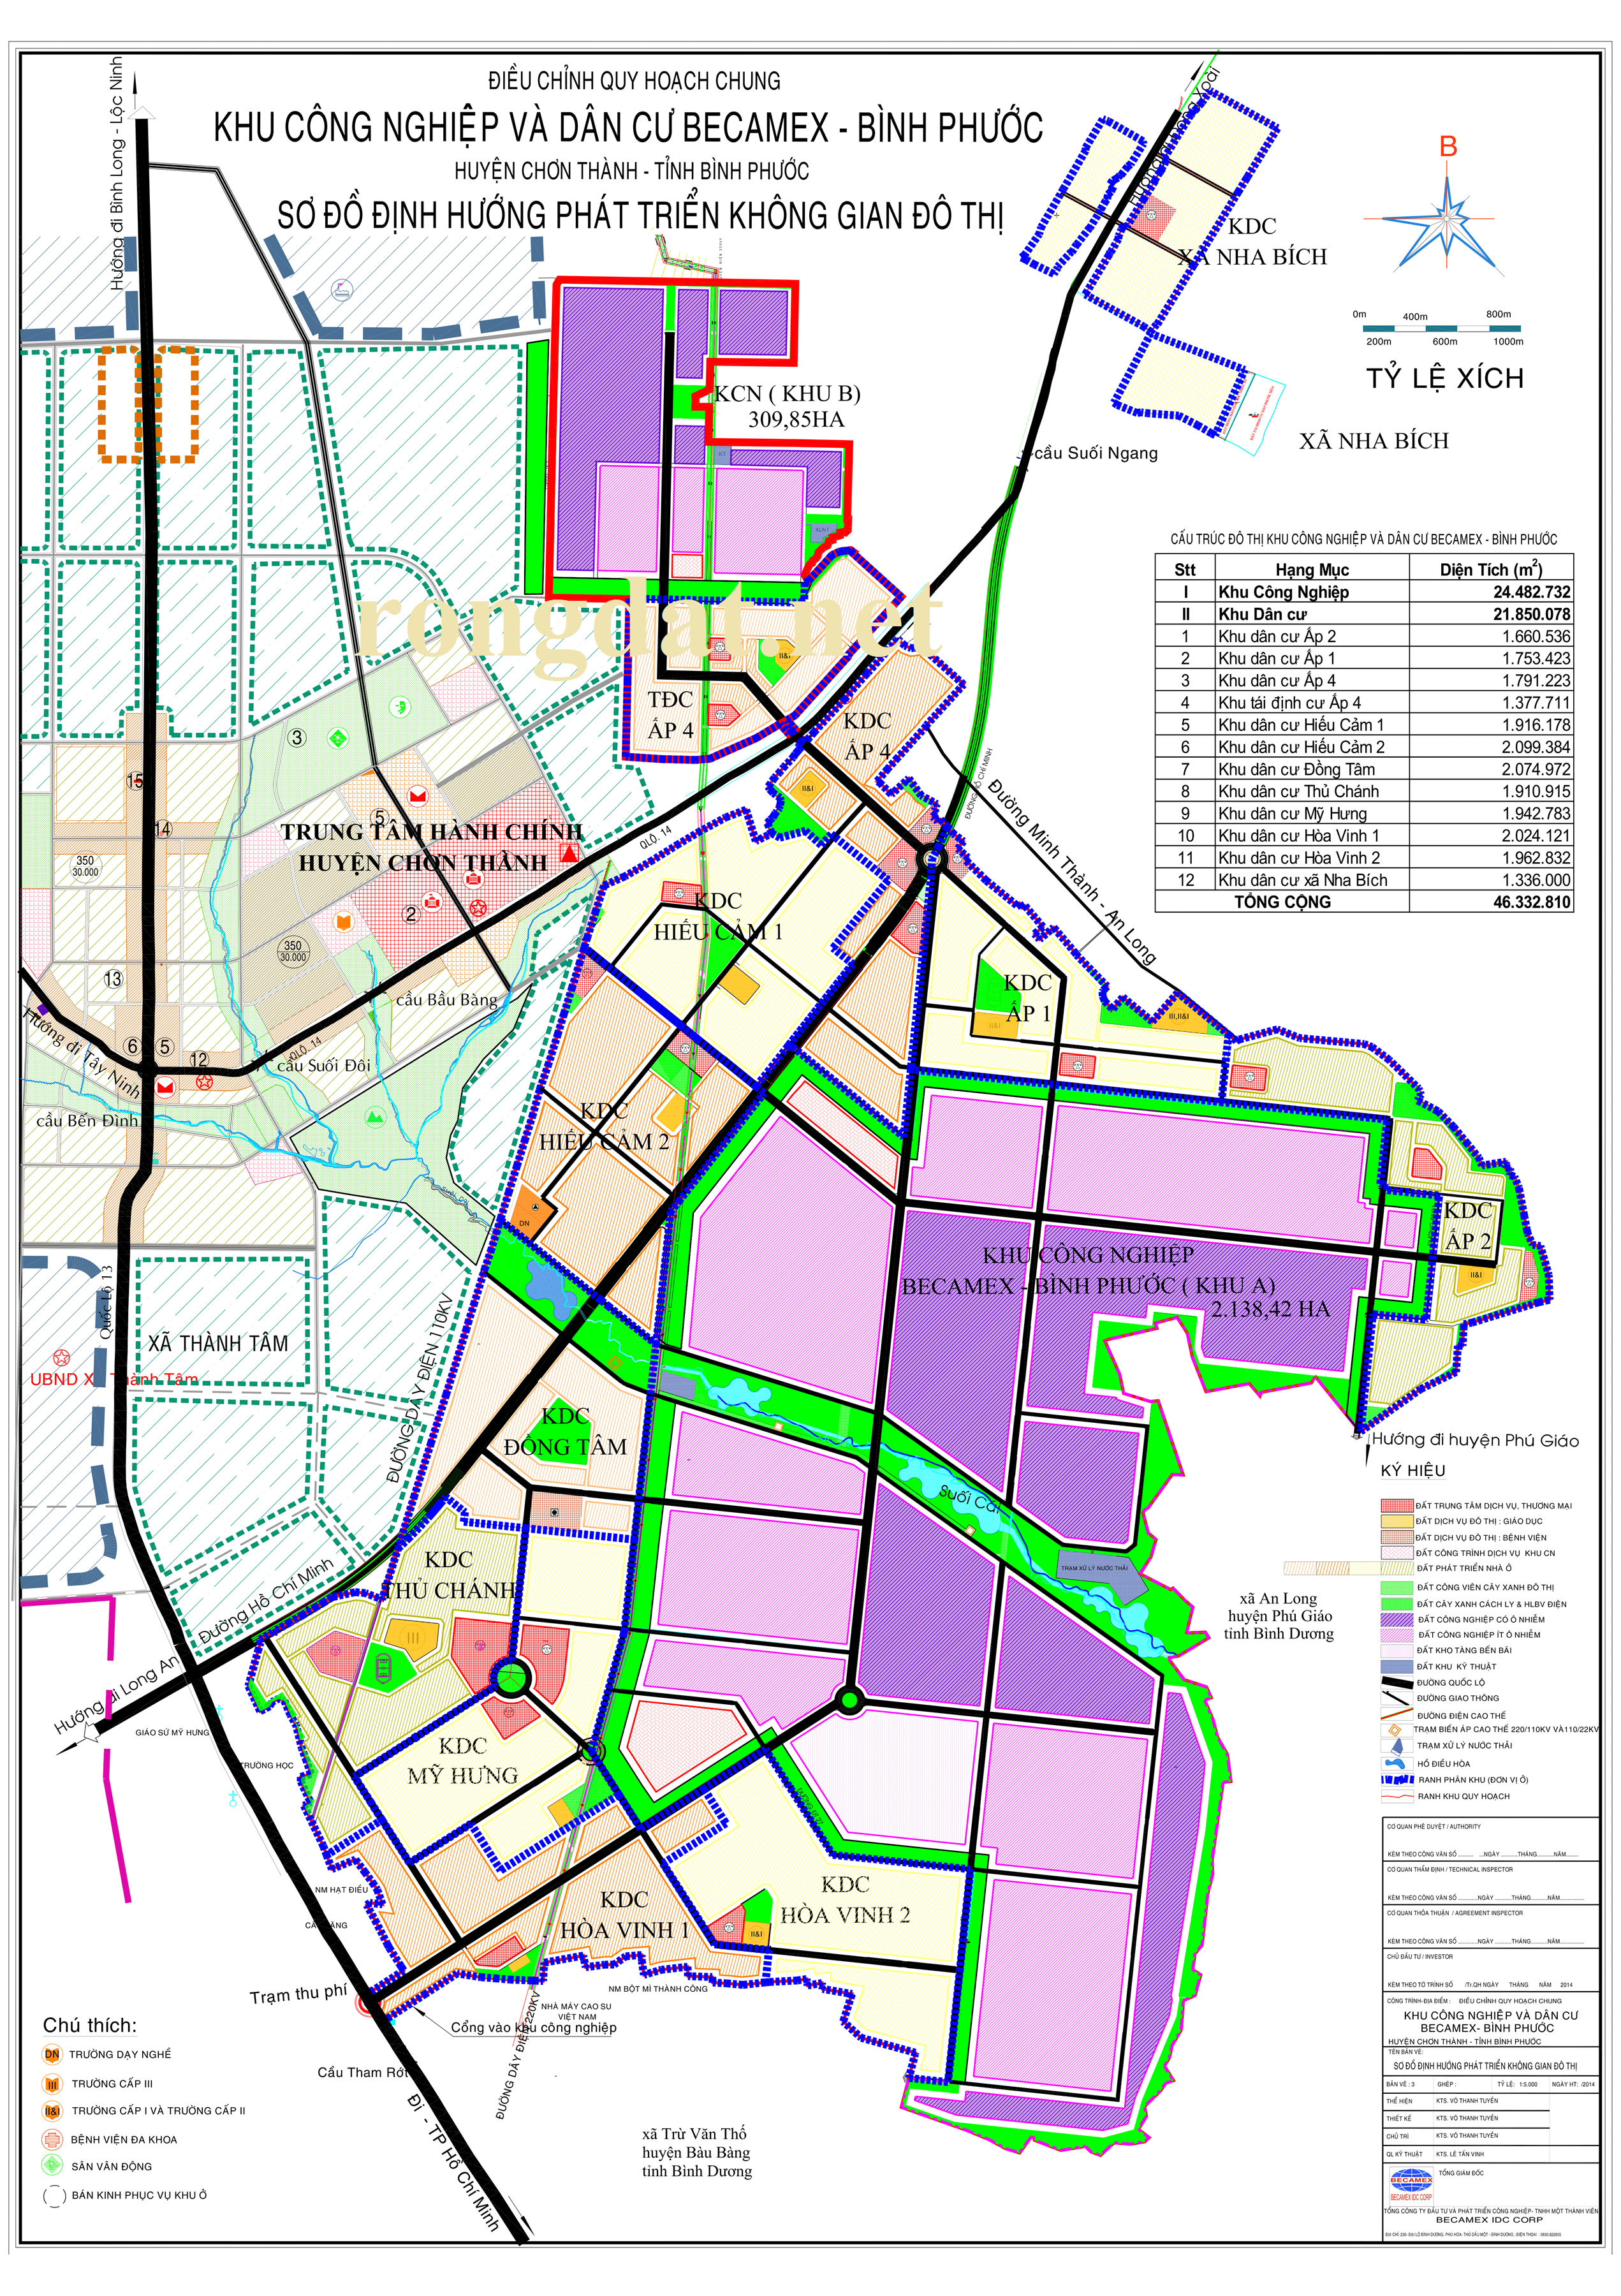 Quy hoạch Khu công nghiệp và dân cư Becamex Bình Phước 